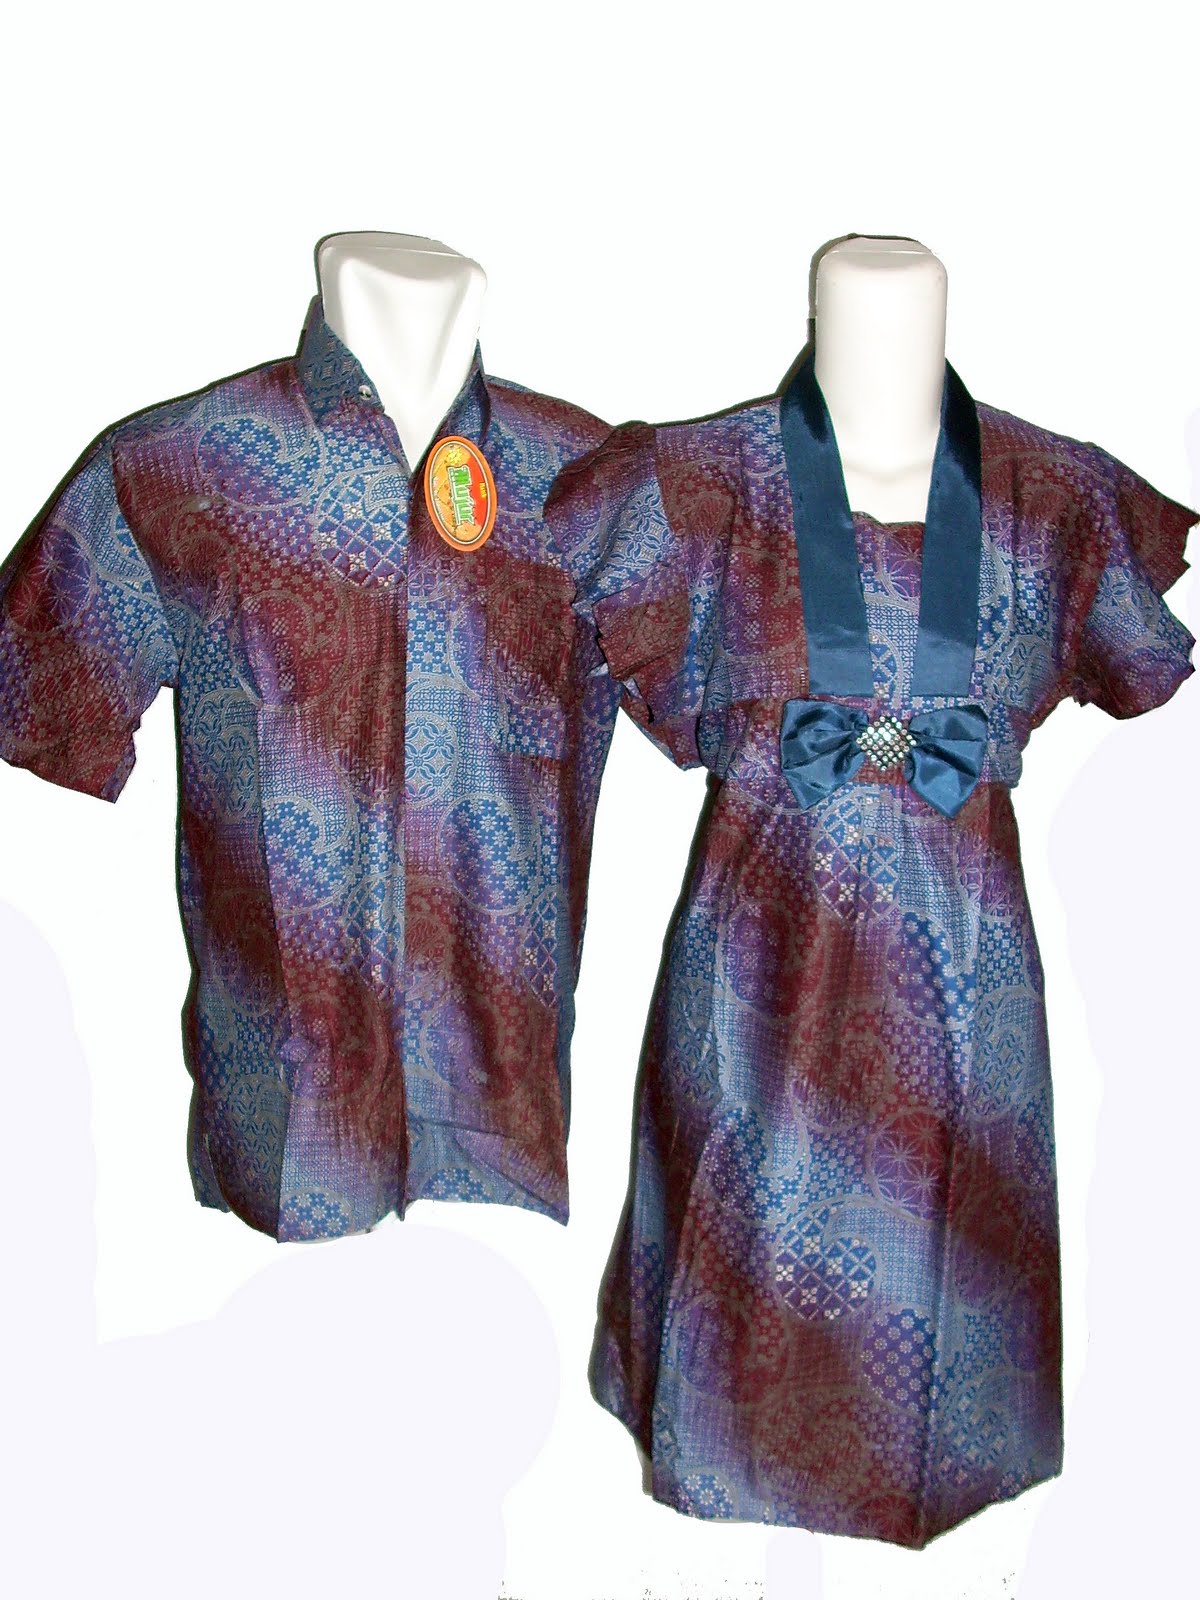 Koleksi Batik Sarimbit GUDANG BATIK MURAH